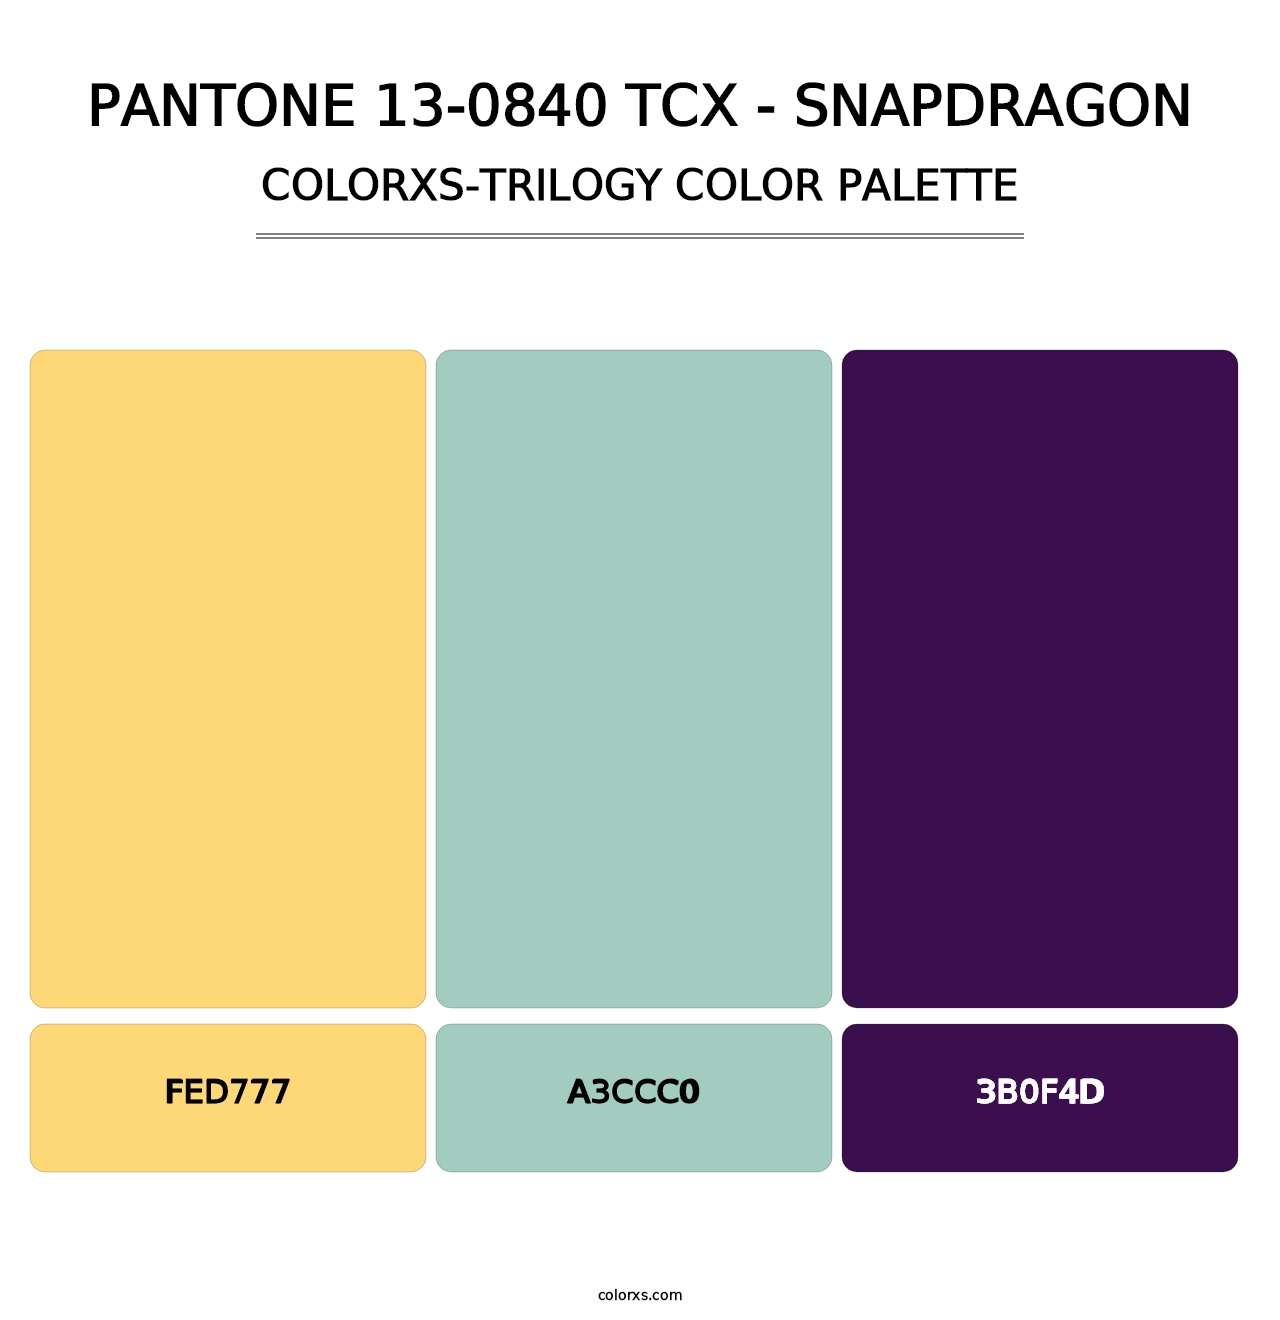 PANTONE 13-0840 TCX - Snapdragon - Colorxs Trilogy Palette